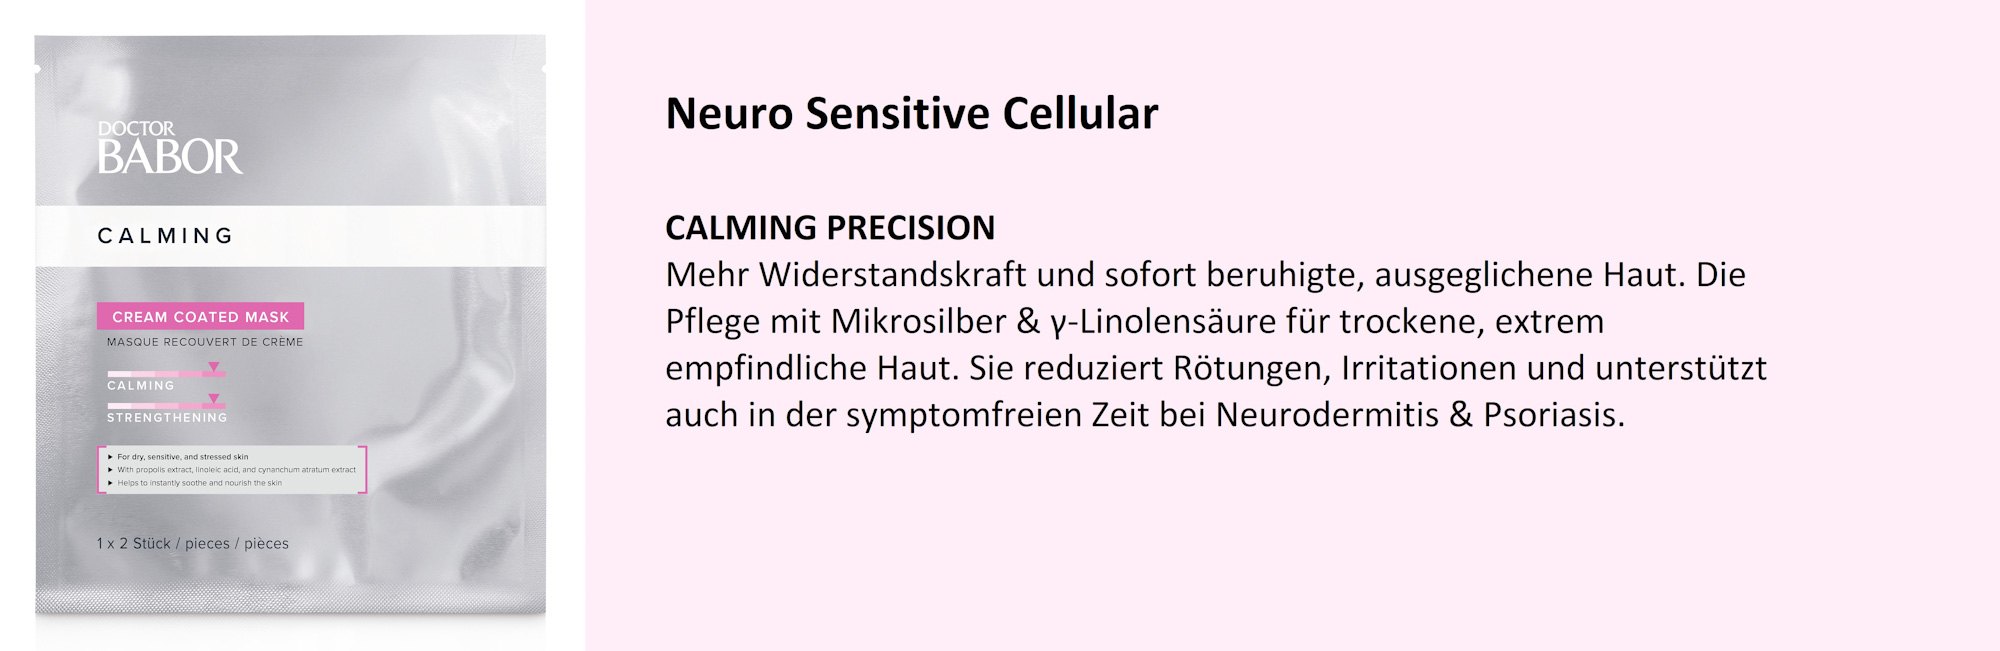 Neuro Sensitive Cellular